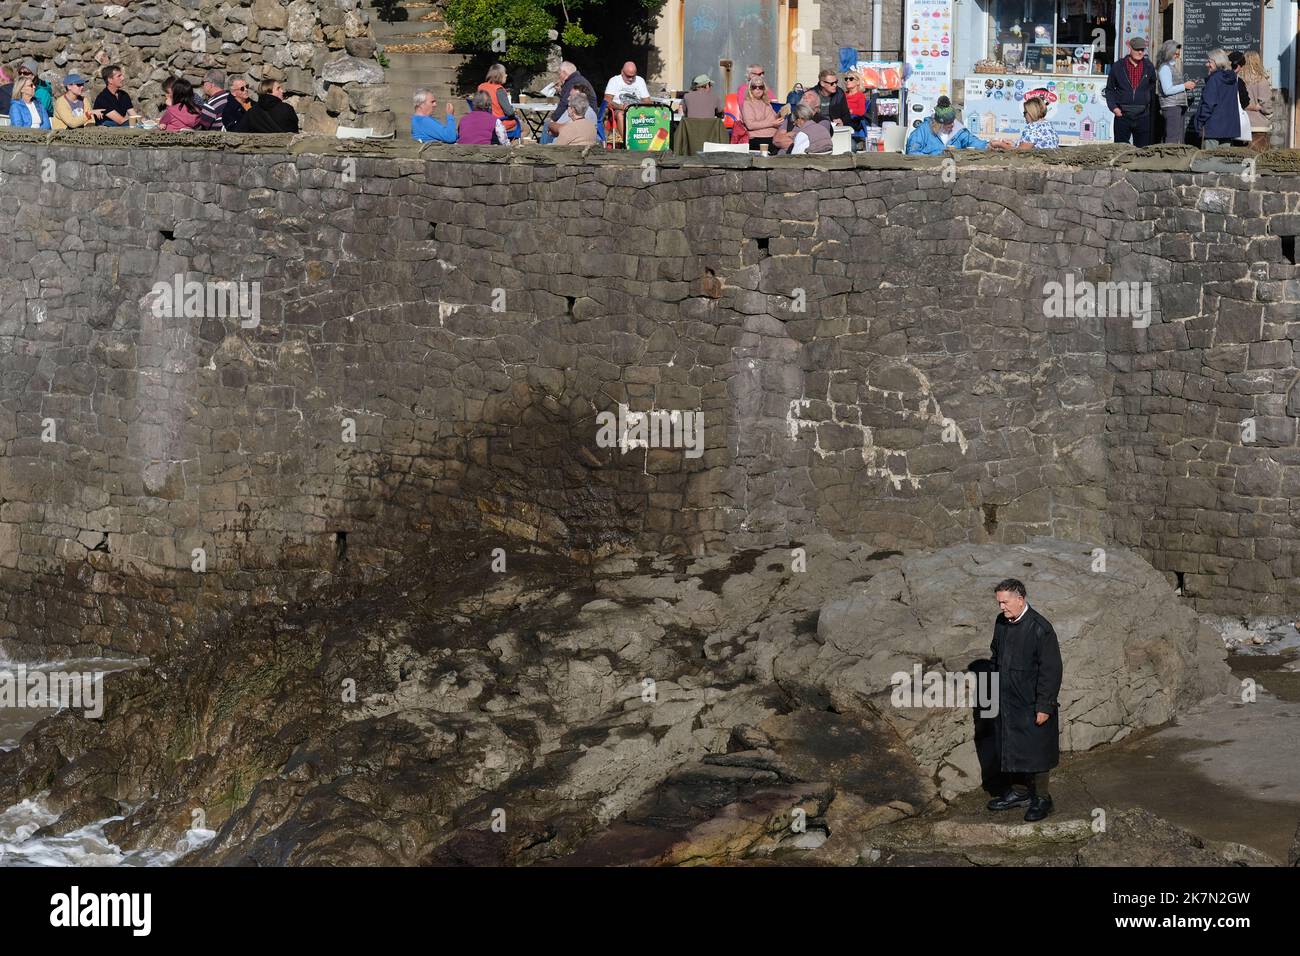 Un uomo solitario in piedi su alcune rocce mentre la gente si gode sopra. Foto Stock